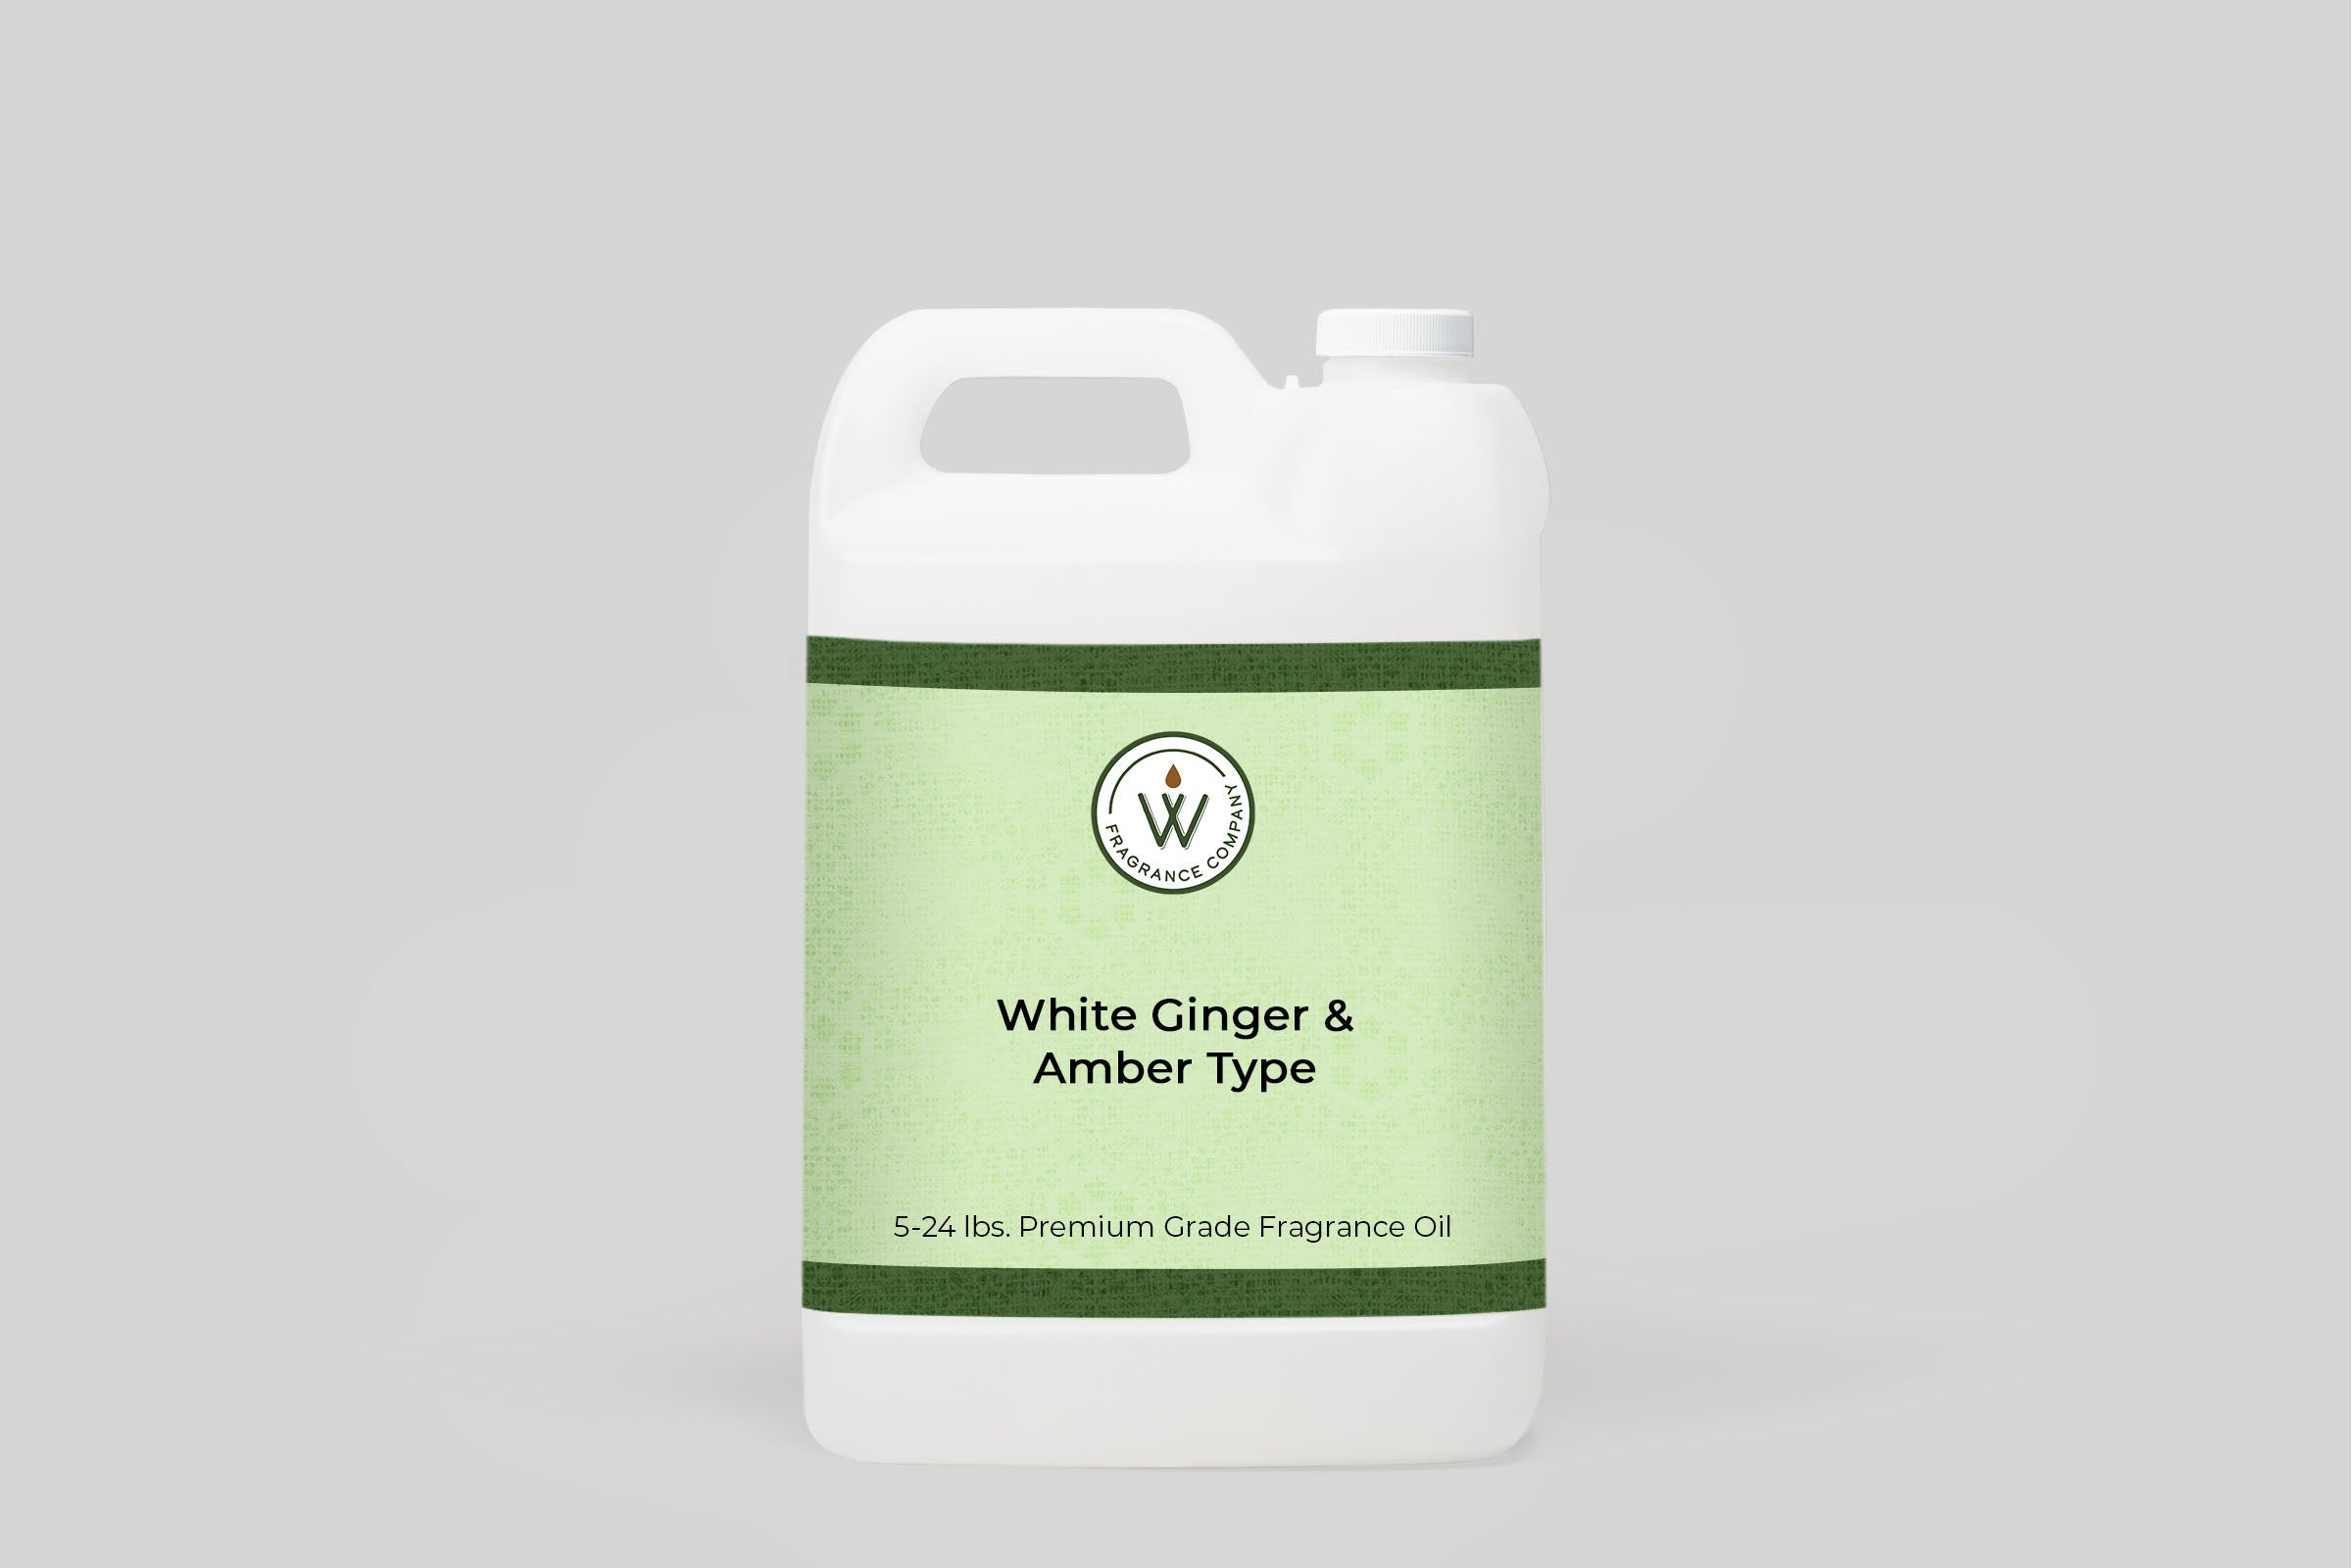 White Ginger & Amber Type Fragrance Oil